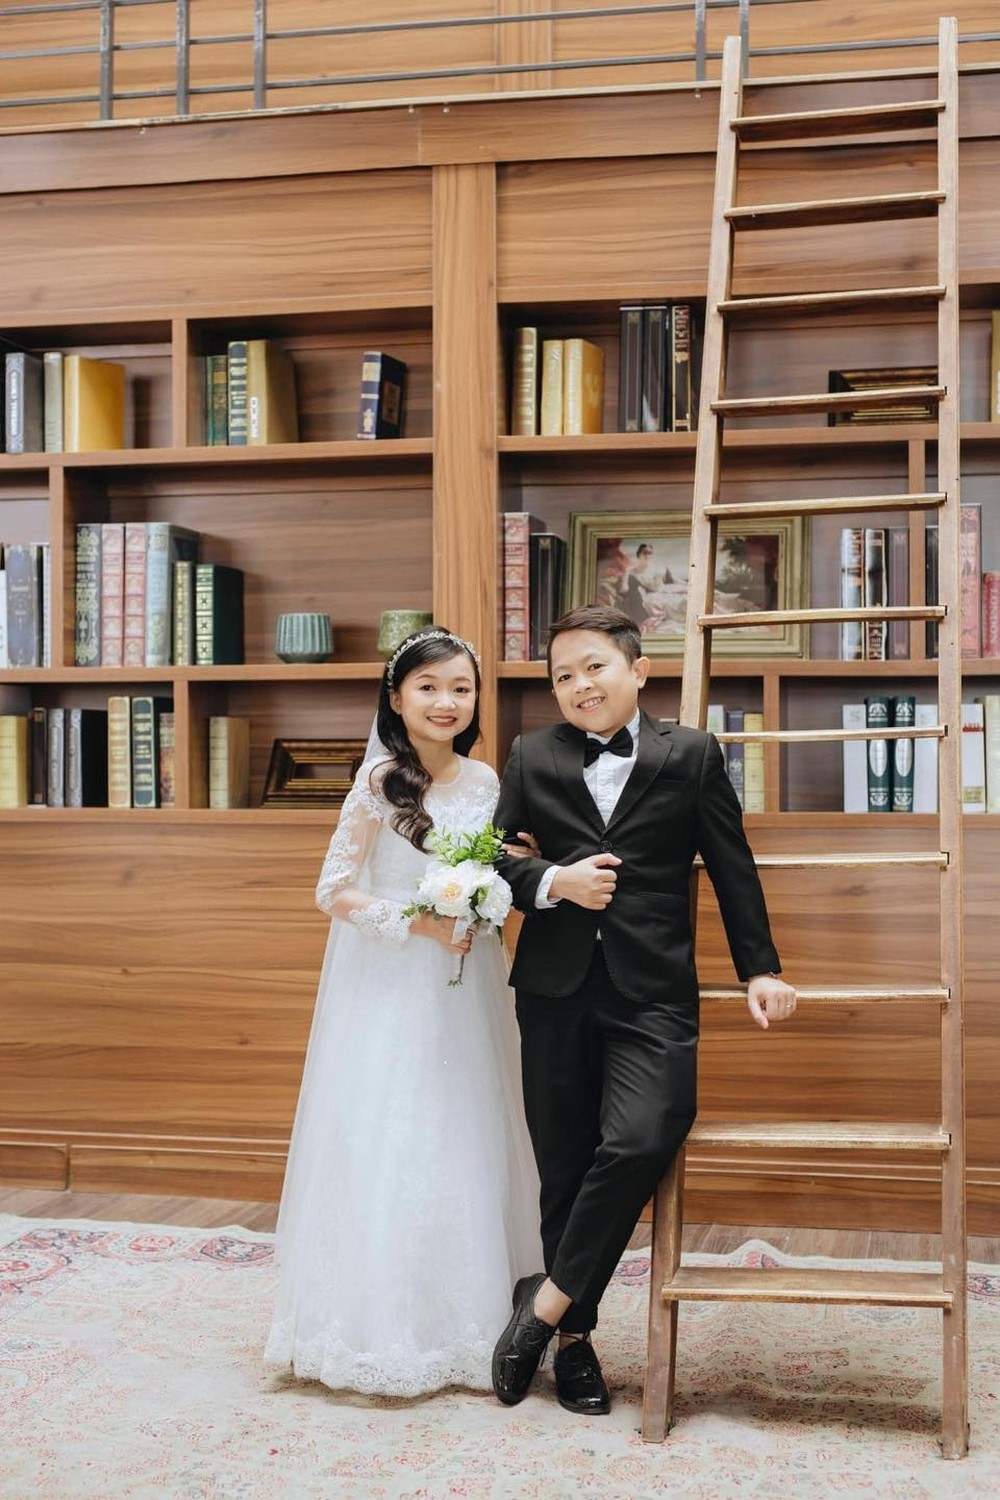 Đôi vợ chồng tí hon vừa làm đám cưới tại Nghệ An: Nhiều lúc đi đường hay bị nhầm là chị em - Ảnh 11.